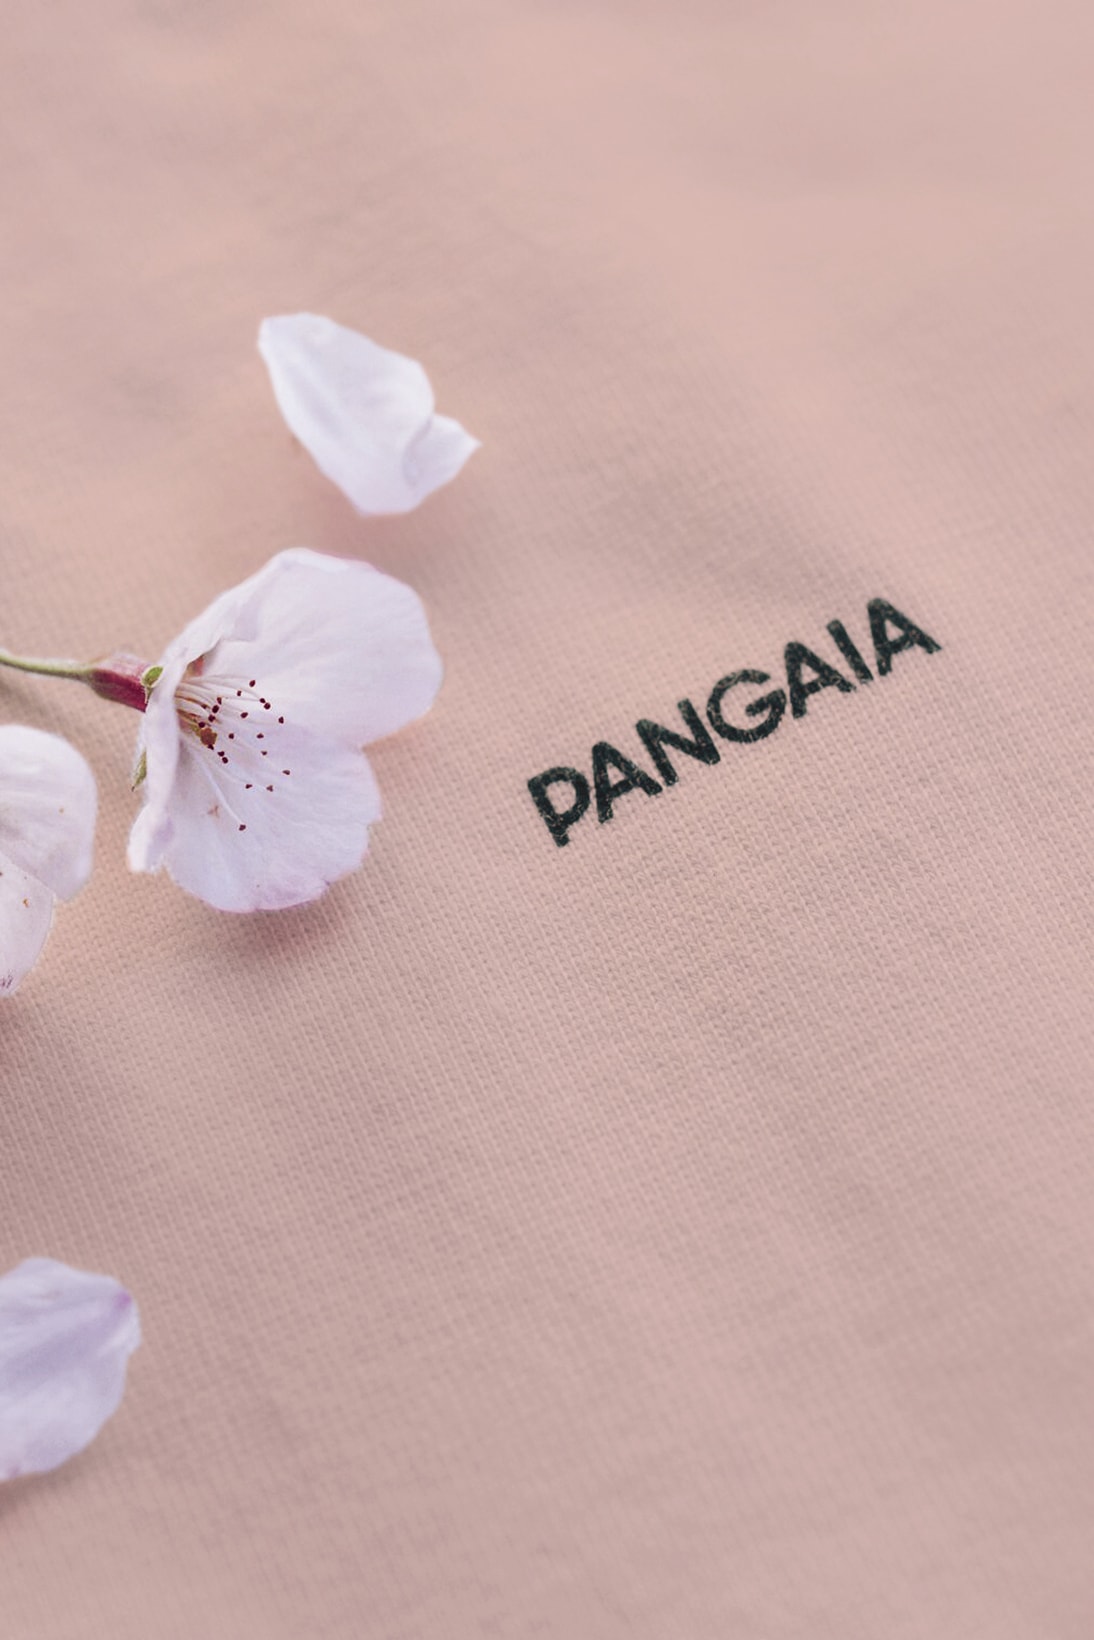 pangaia sakura blossom t shirt pink botanical dye unisex sustainability